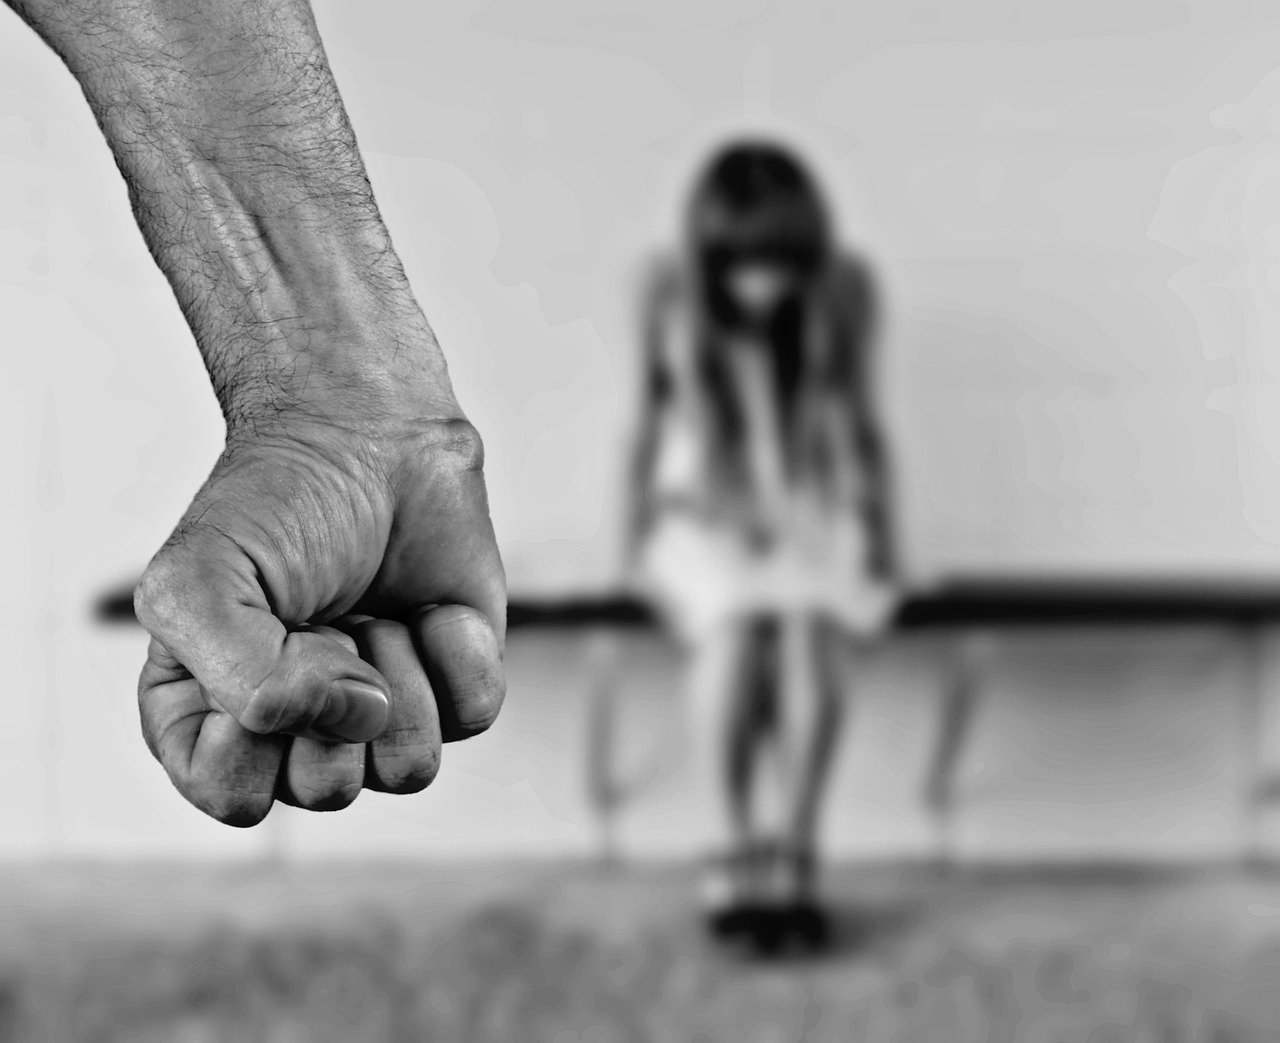 Ilustrasi kekerasan terhadap perempuan dengan cara disiksa pacarnya foto: Pixabay